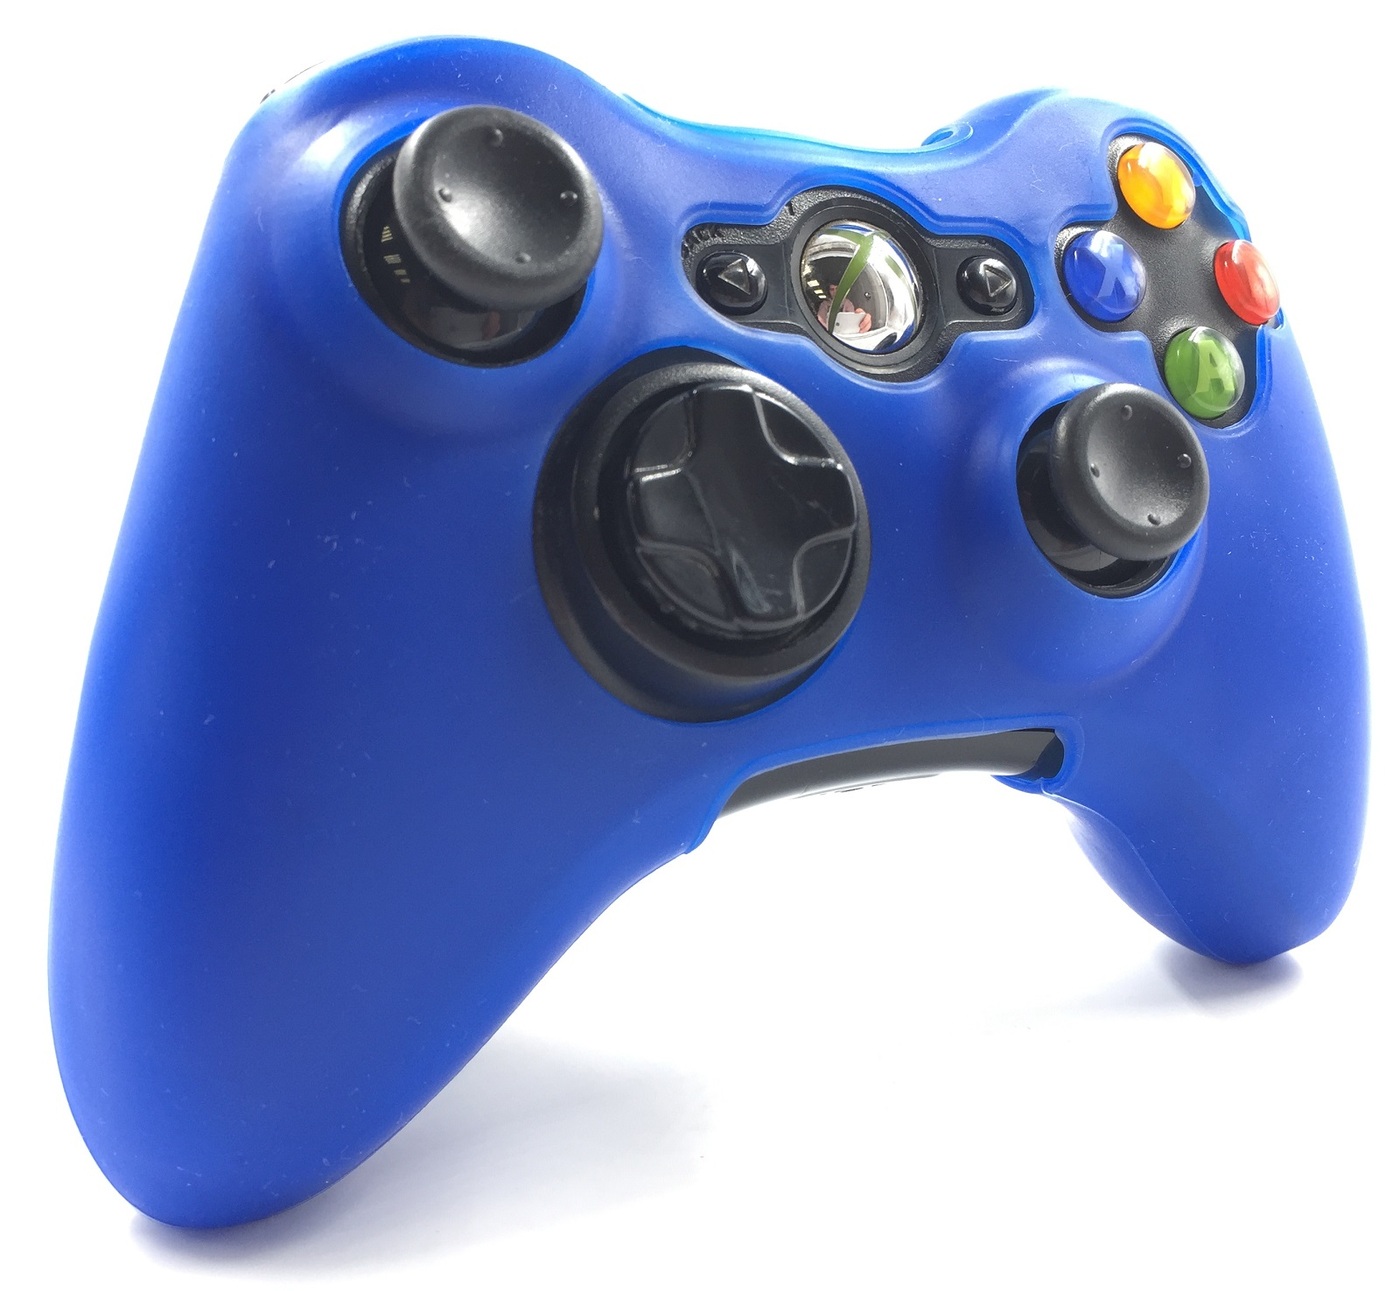 полное силиконовое покрытие  защита от ударовчехол на геймпад xbox 360 синий blue